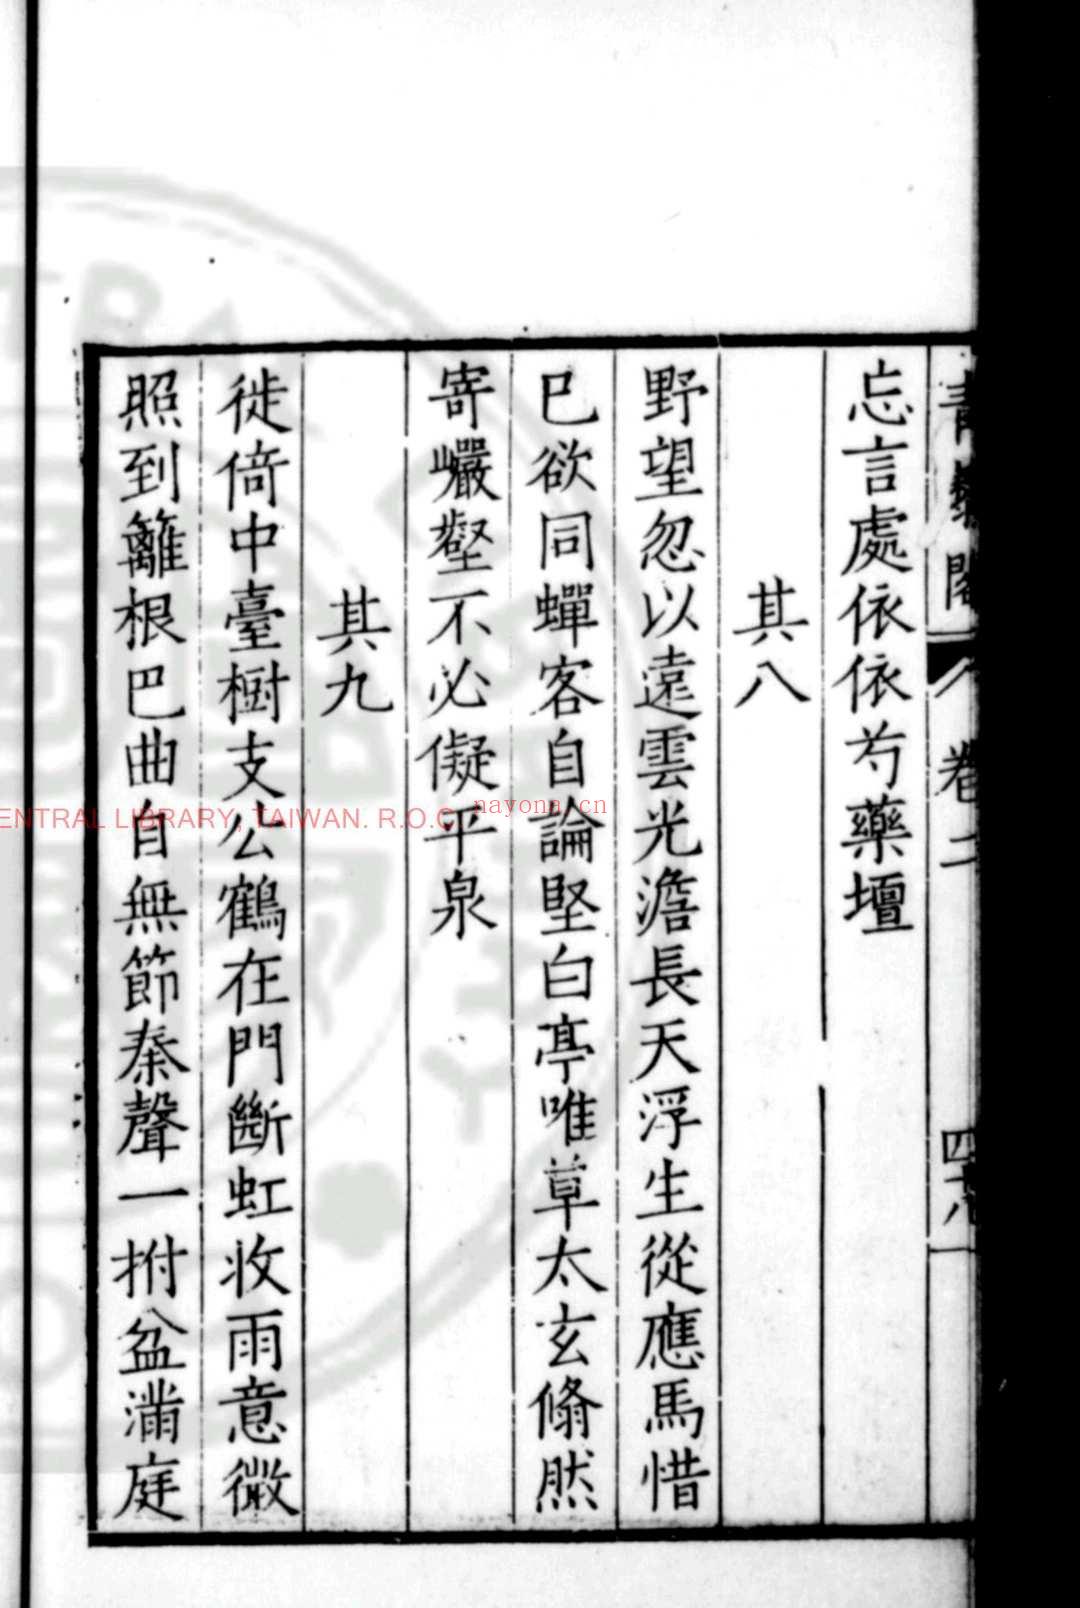 青藜阁初稿 (明)戚元佐撰 明万历元年(1573)新都胡日新等校刊本